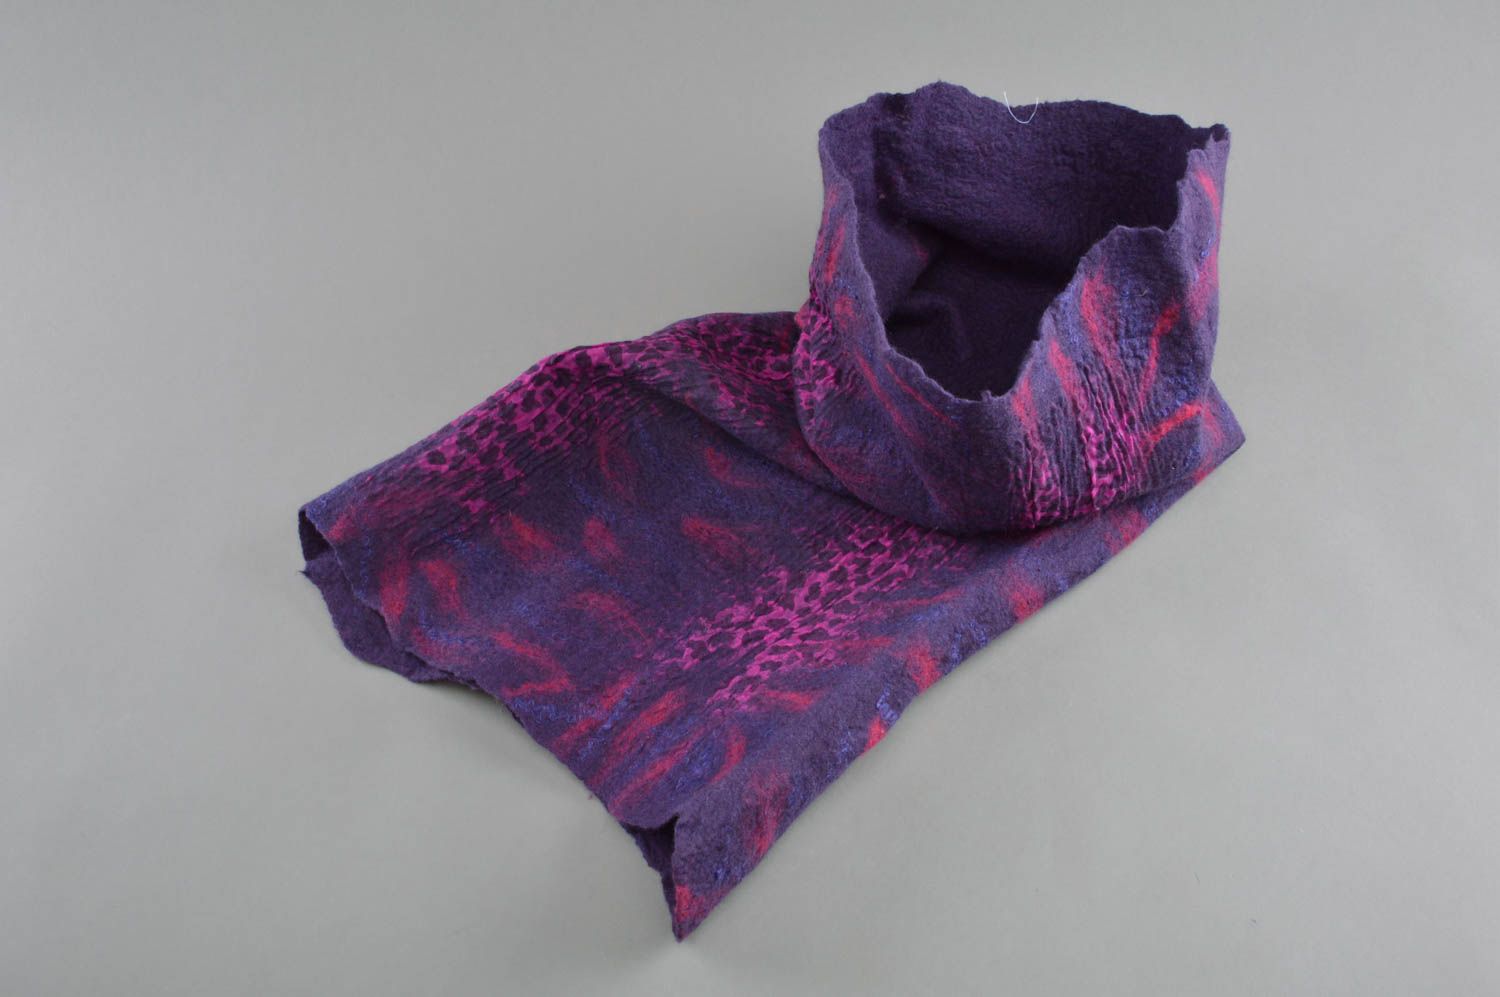 Snood en laine et soie technique de feutrage fait main violet foncé stylé photo 1